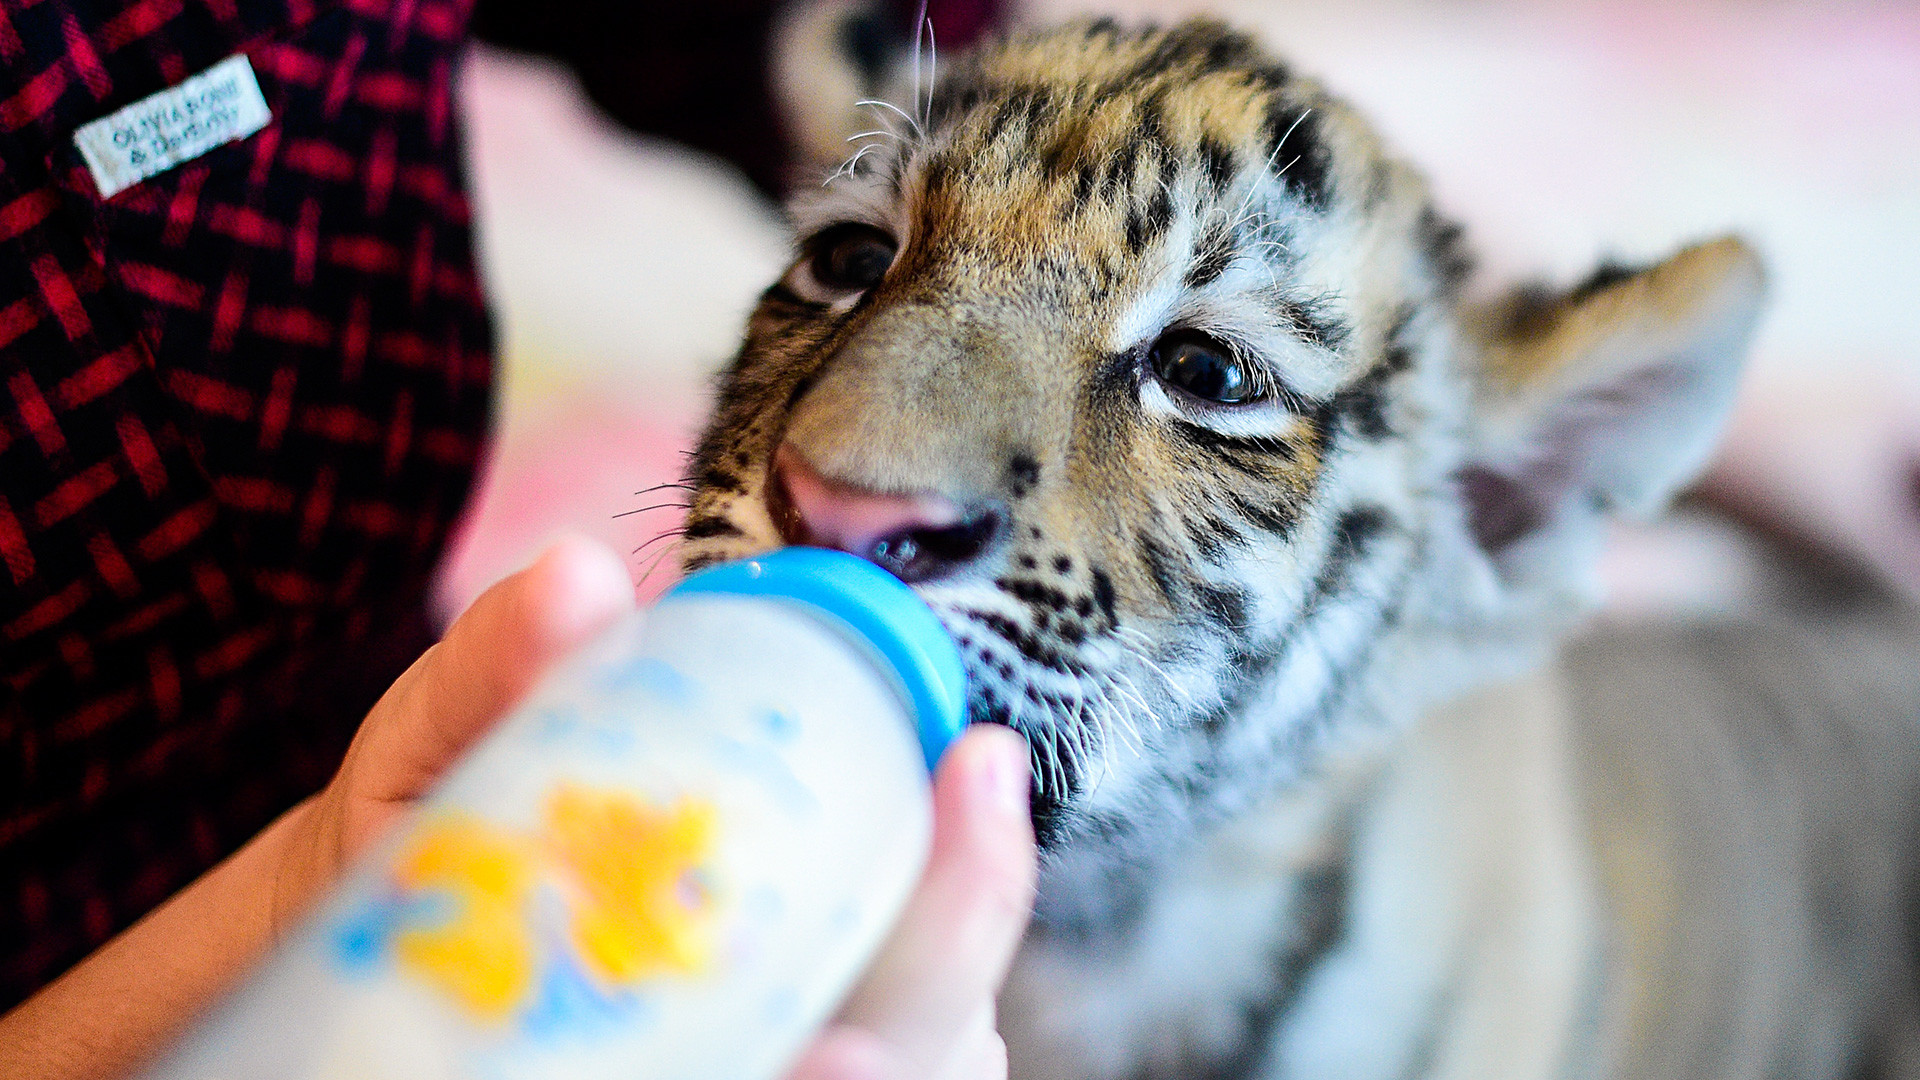 Dokter hewan Vasilina Tataurova memberi makan Sherkhan, seekor anak harimau Siberia berusia dua bulan, di rumahnya di desa Shkotovo. Sherkhan lahir pada September 2016 dari pasangan harimau Siberia Amur dan Ussuri di Taman Safari Primorye.